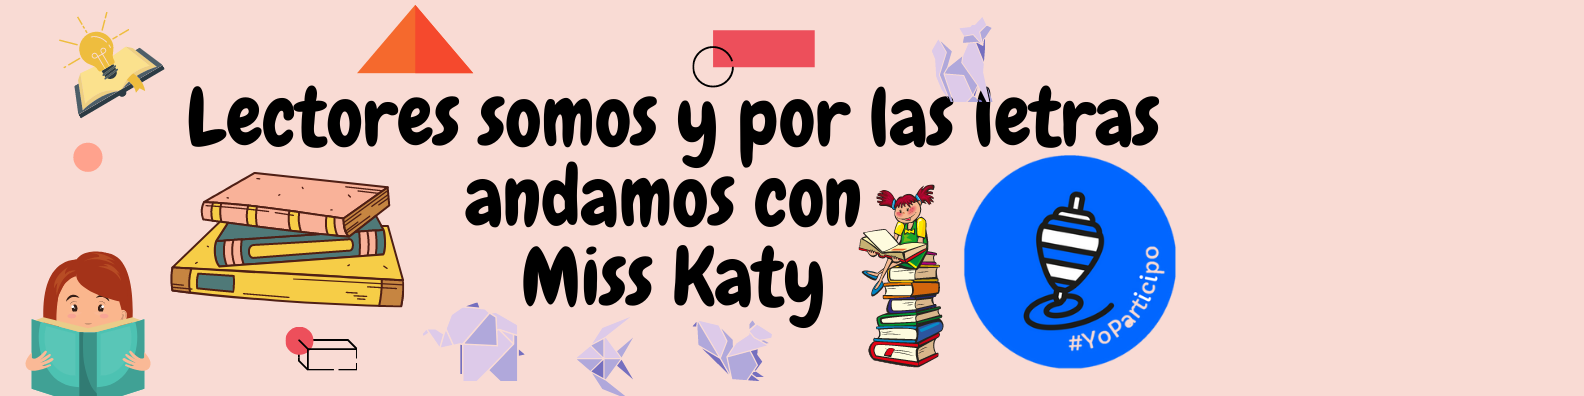 Lectores somos y por las letras andamos con Miss Katy